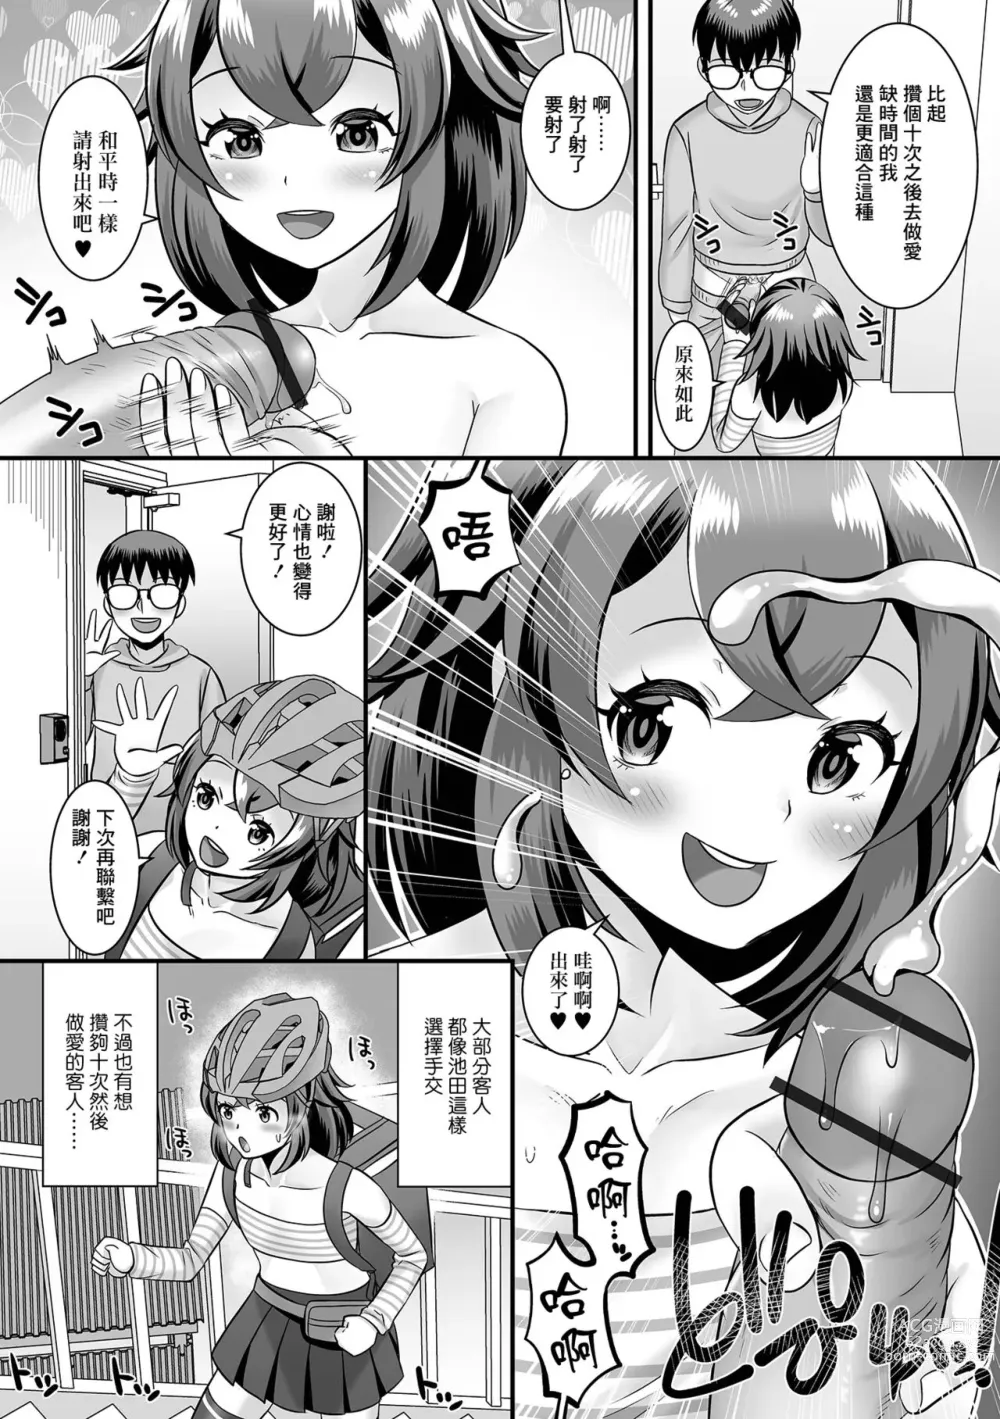 Page 6 of manga 我正在進行秘密的服務活動